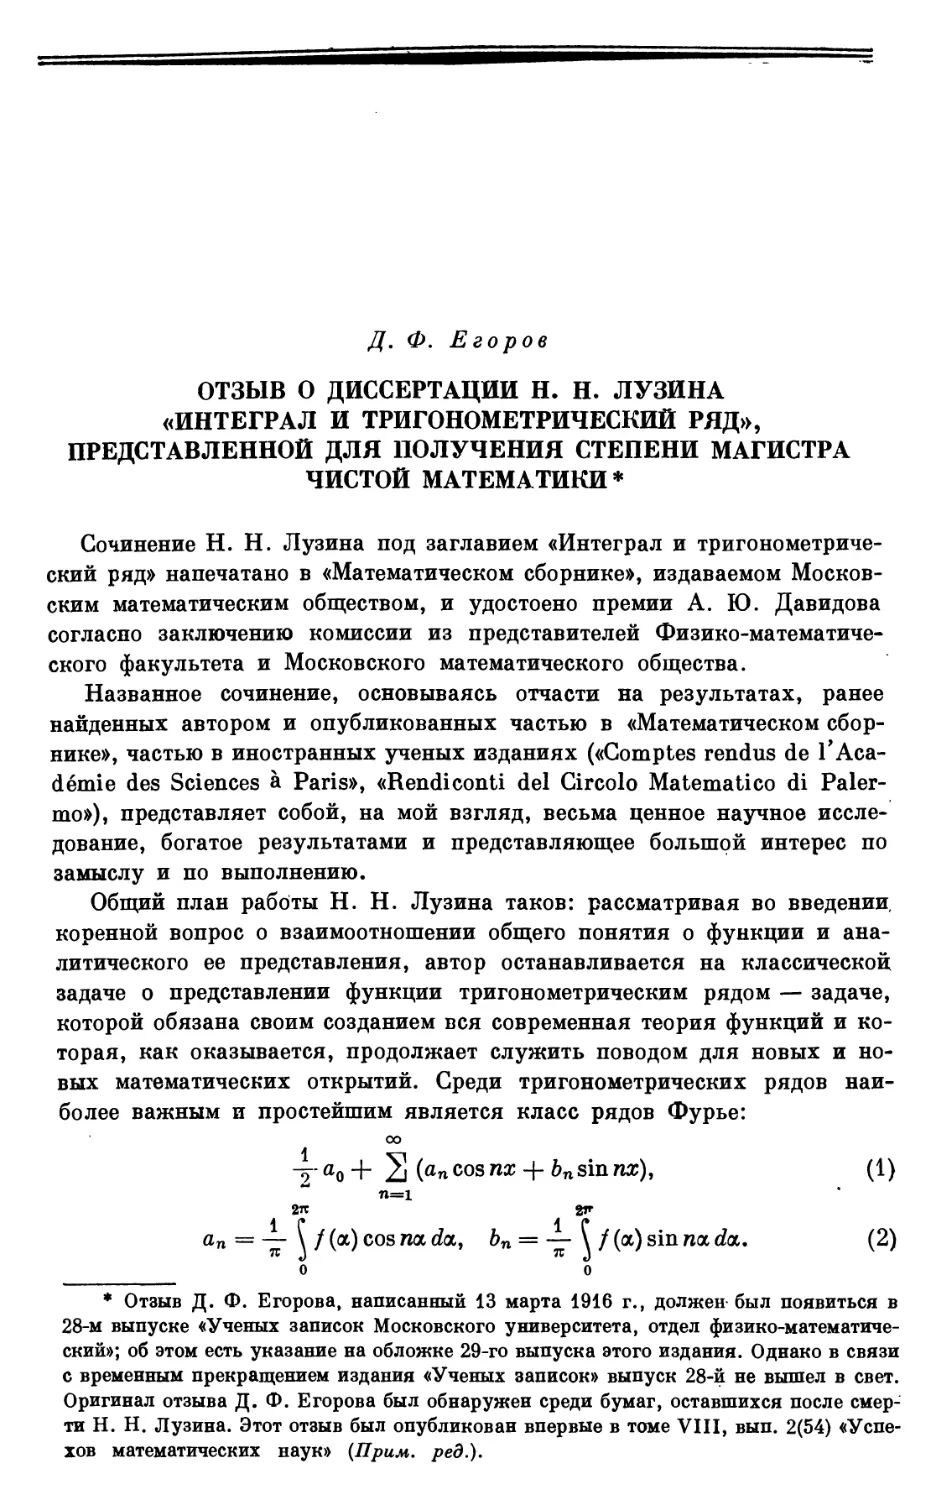 Д. Ф. Егоров. Отзыв о диссертации Н. Н. Лузина «Интеграл и тригонометрический ряд», представленной для получения степени магистра чистой математики